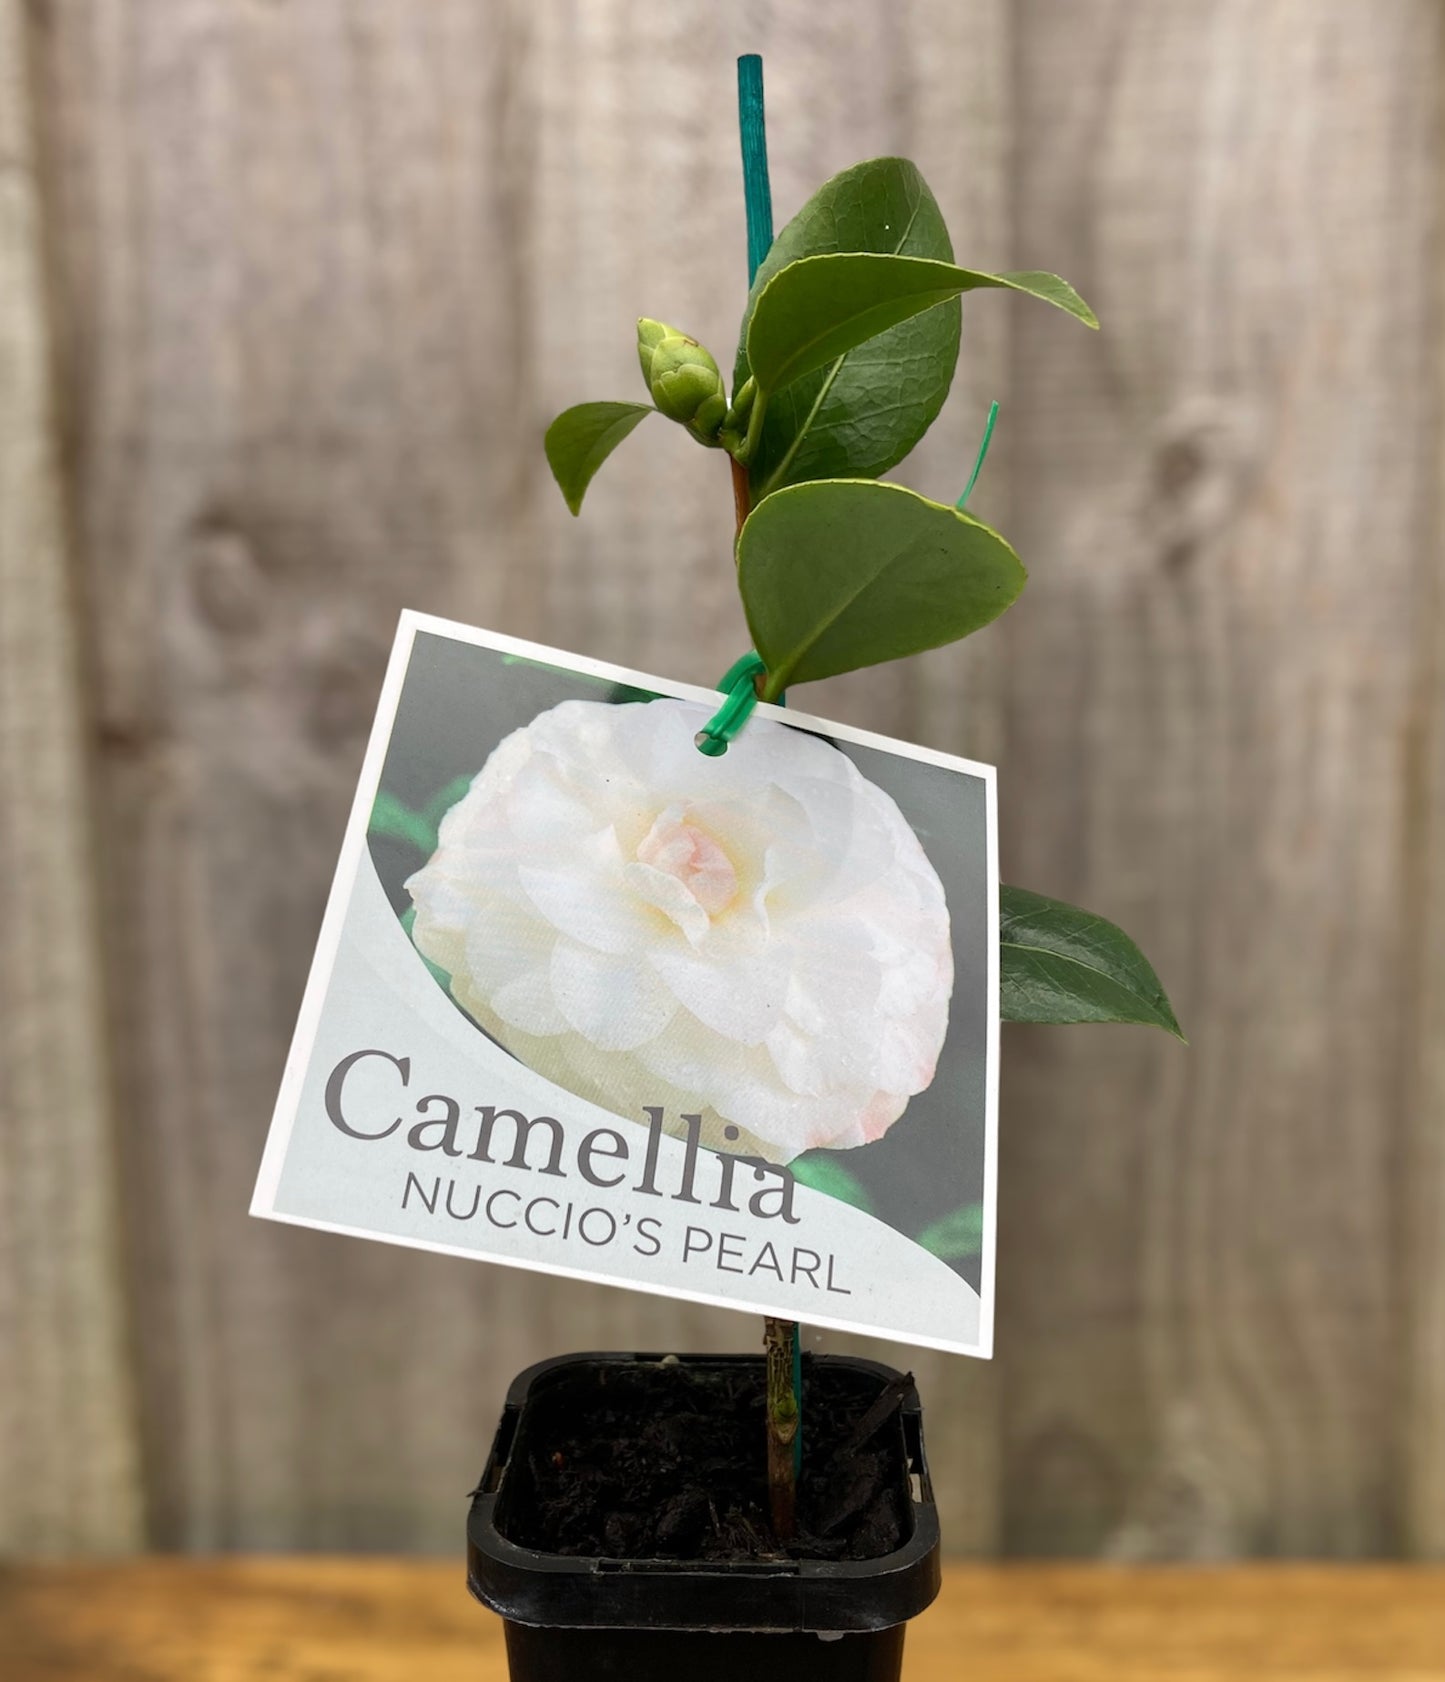 Camellia japonica ‘Nuccio’s Pearl’ 7cm